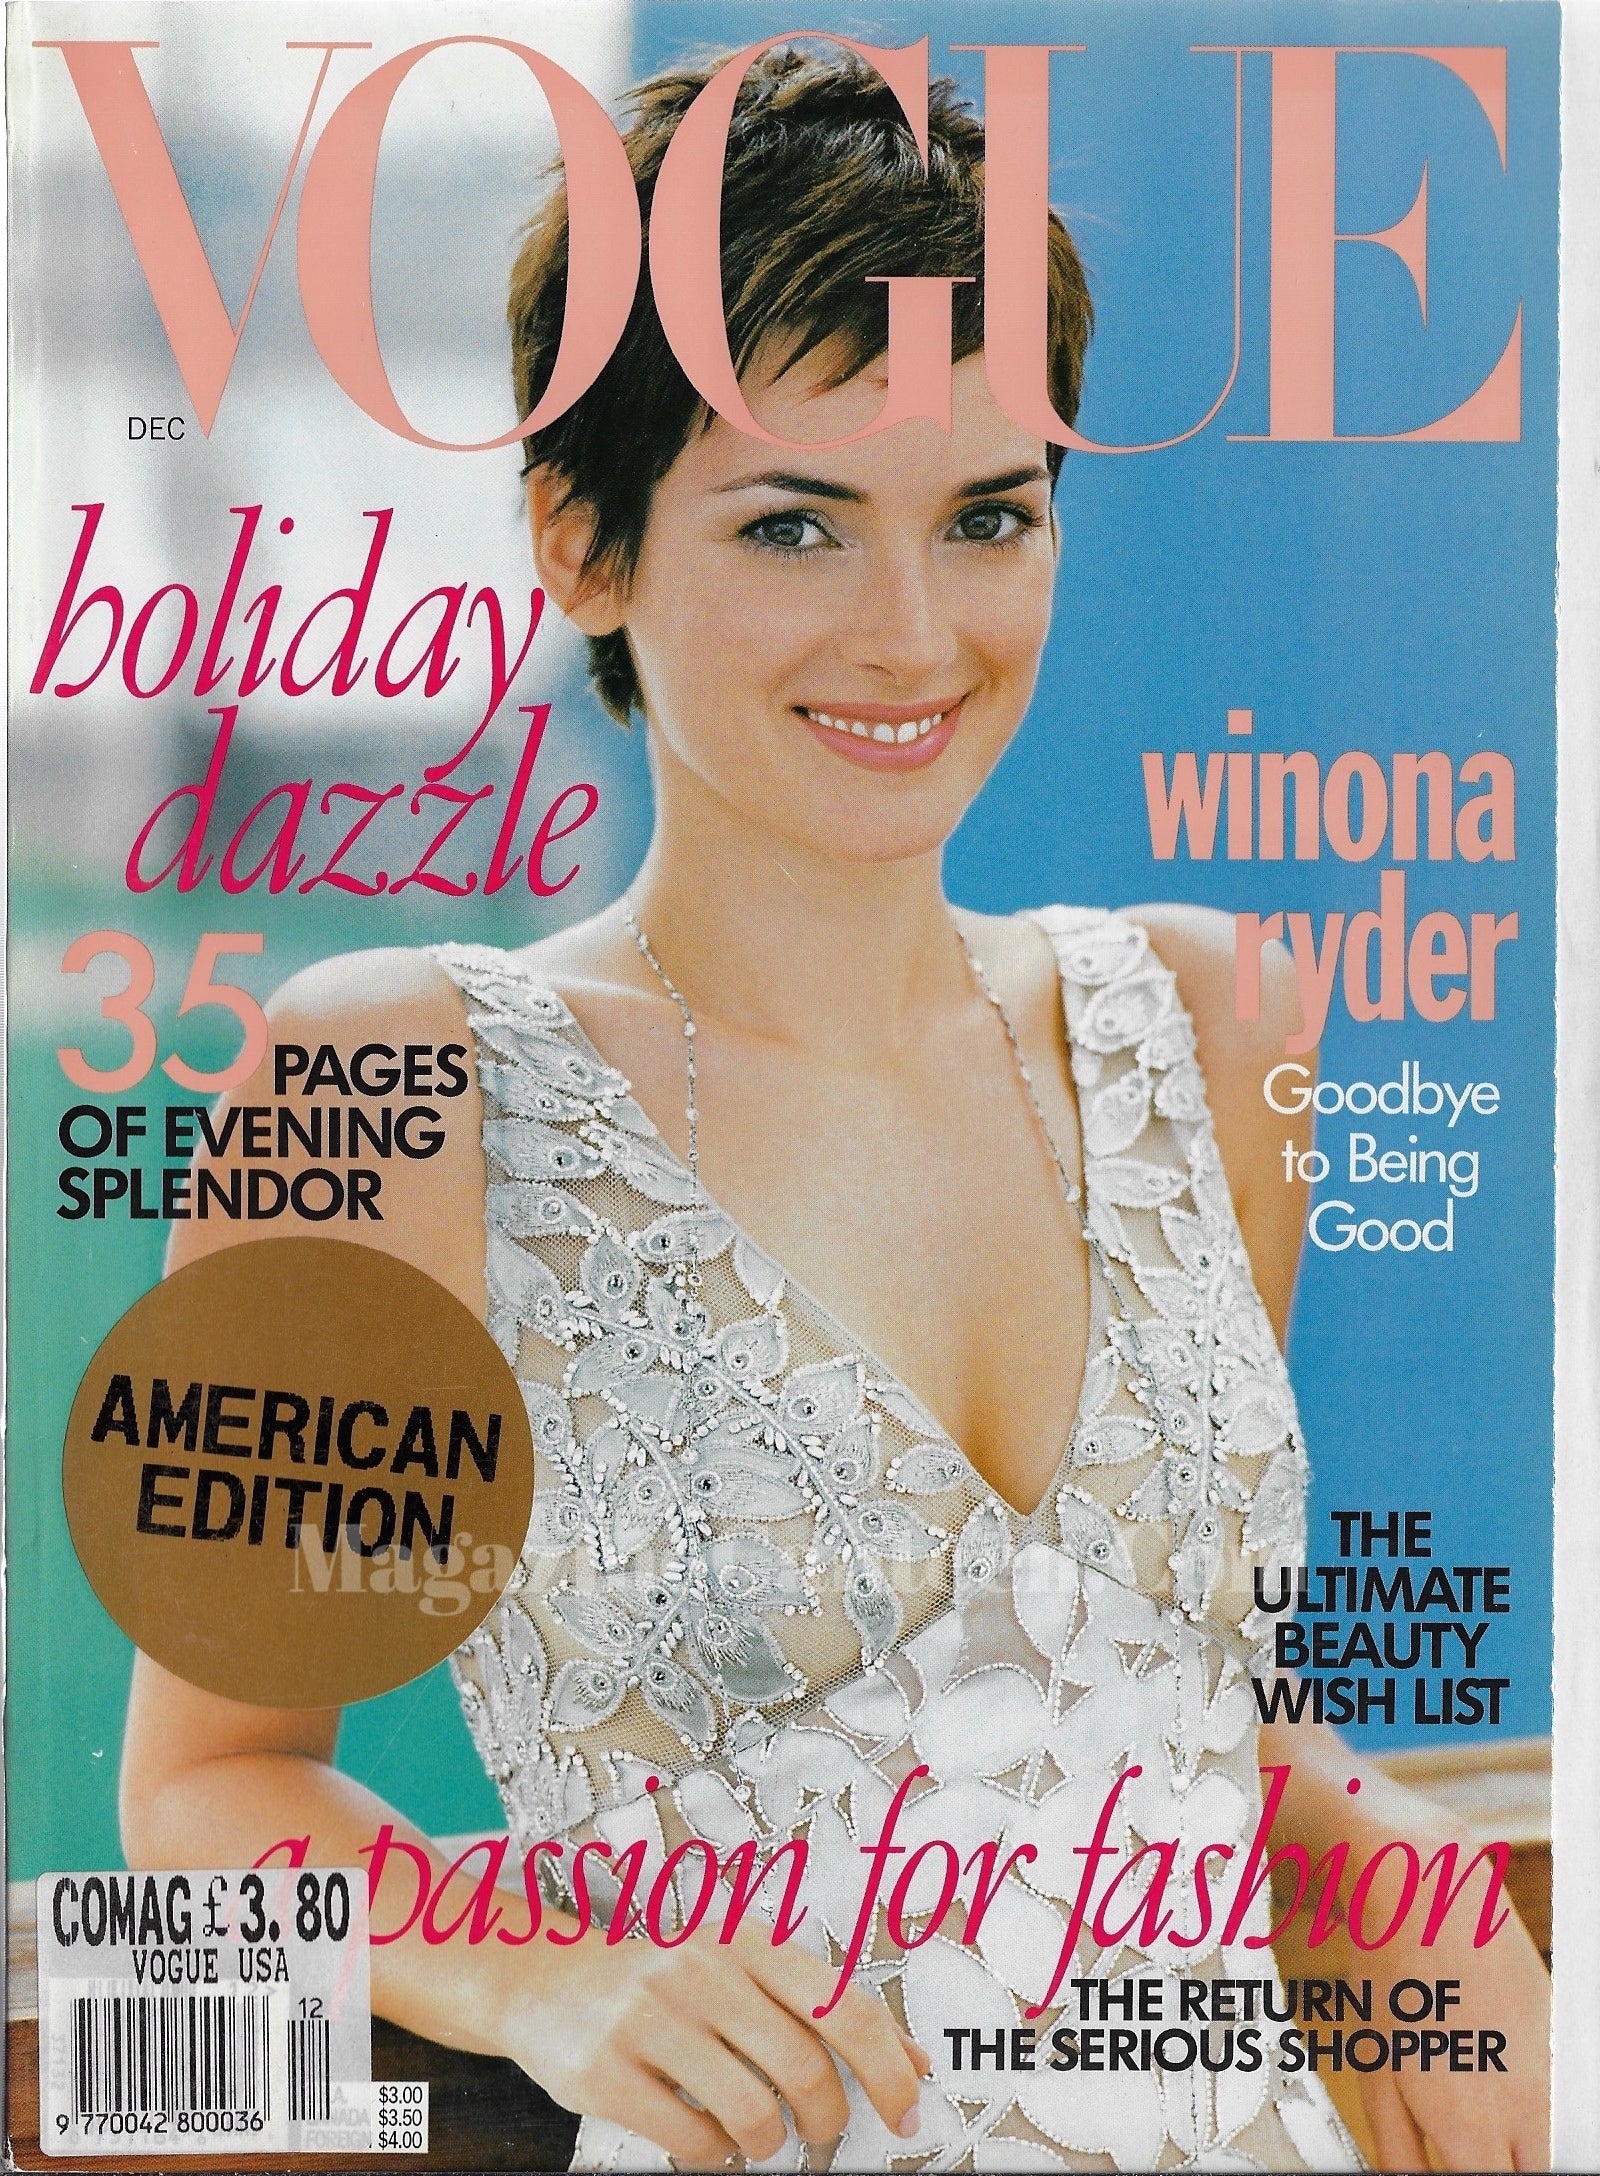 Vogue USA Magazine December 1996 - Winona Ryder